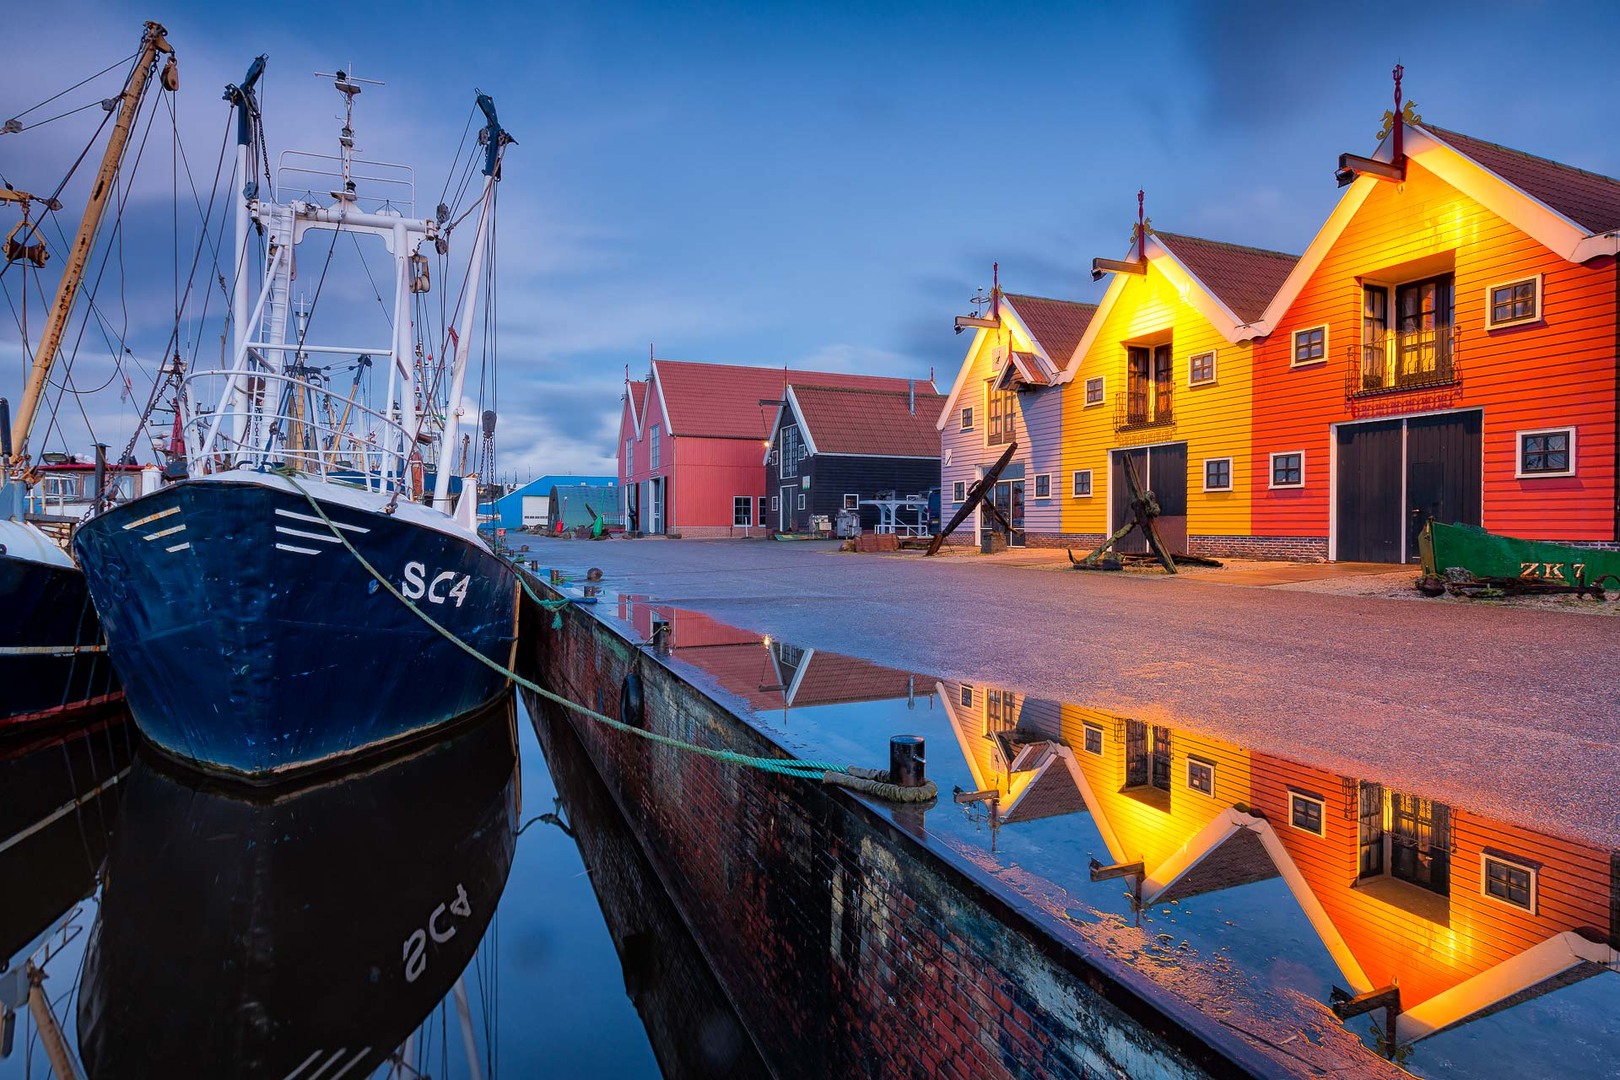 De haven van Lauwersoog met zijn typische gekleurde pakhuisjes